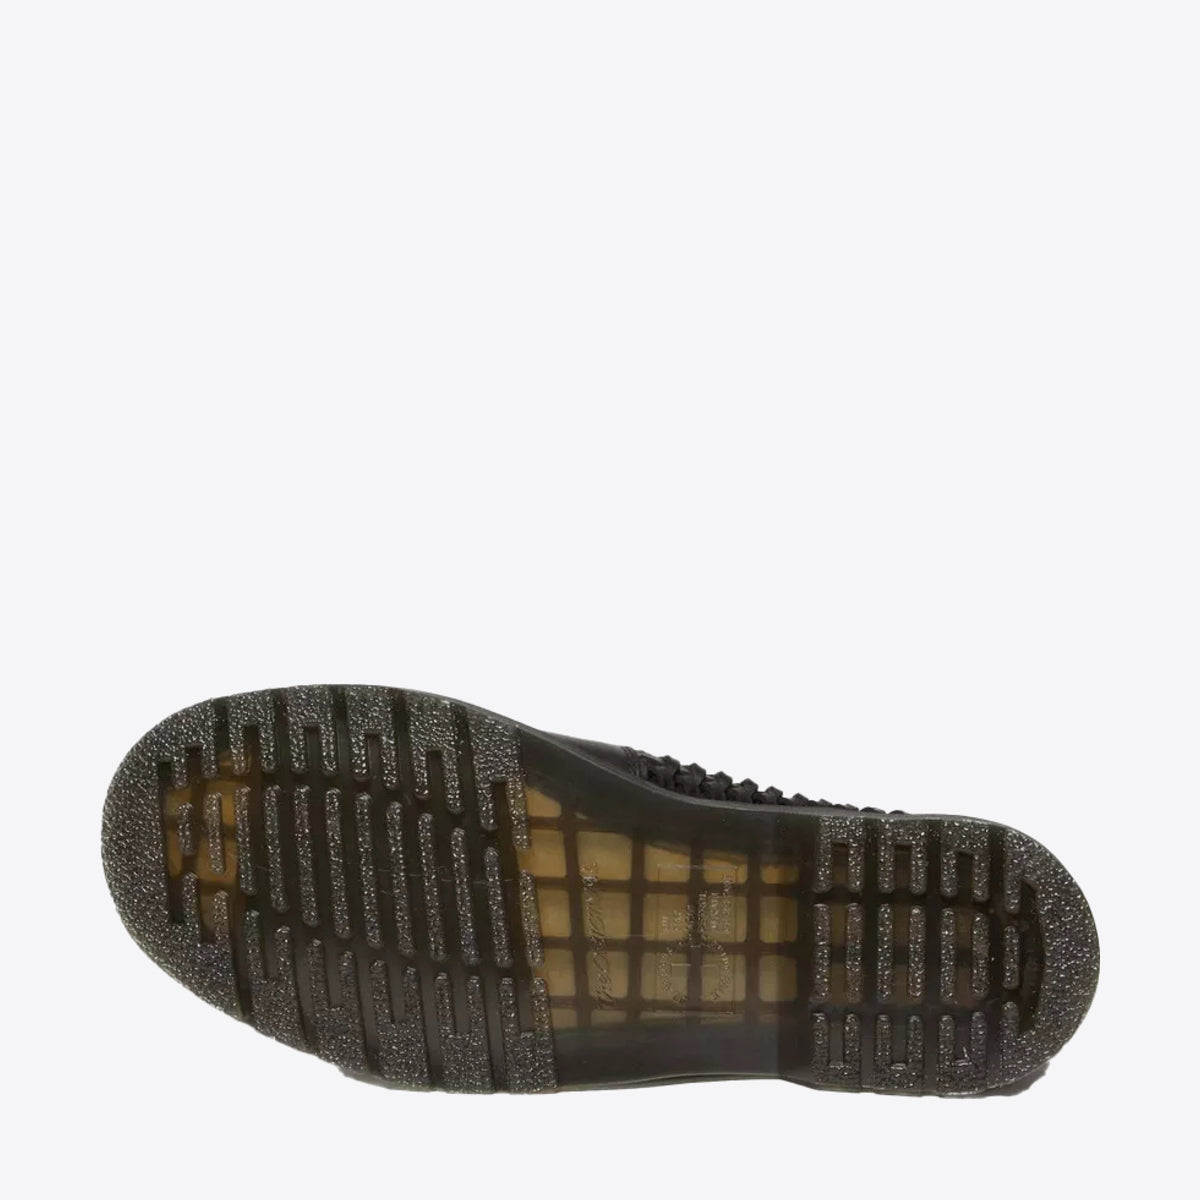 DR MARTENS Adrian Woven Leather Tassel Loafer Black - Image 2